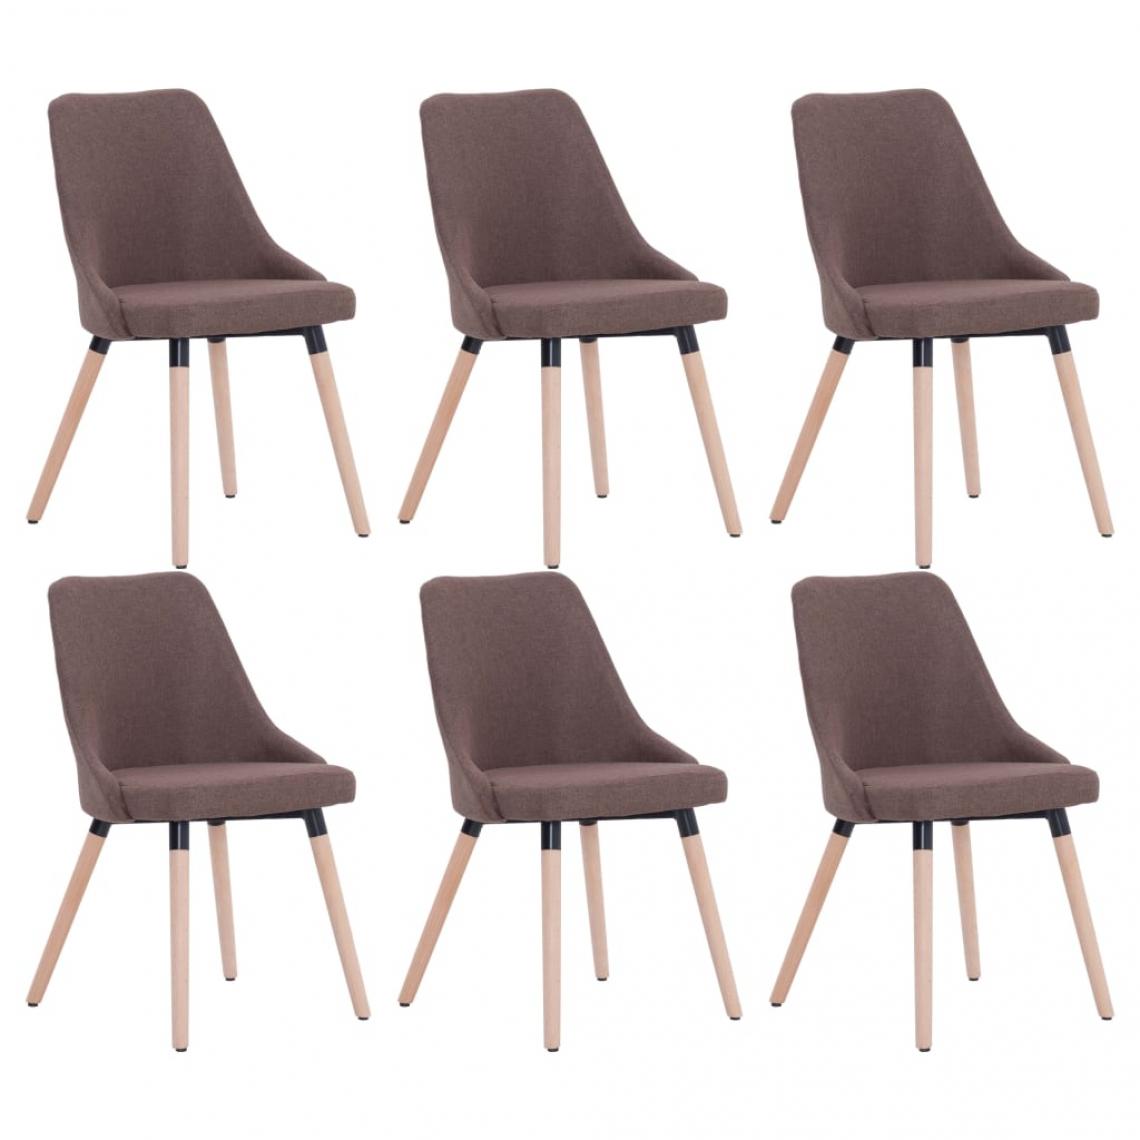 Decoshop26 - Lot de 6 chaises de salle à manger cuisine design moderne tissu marron CDS022632 - Chaises